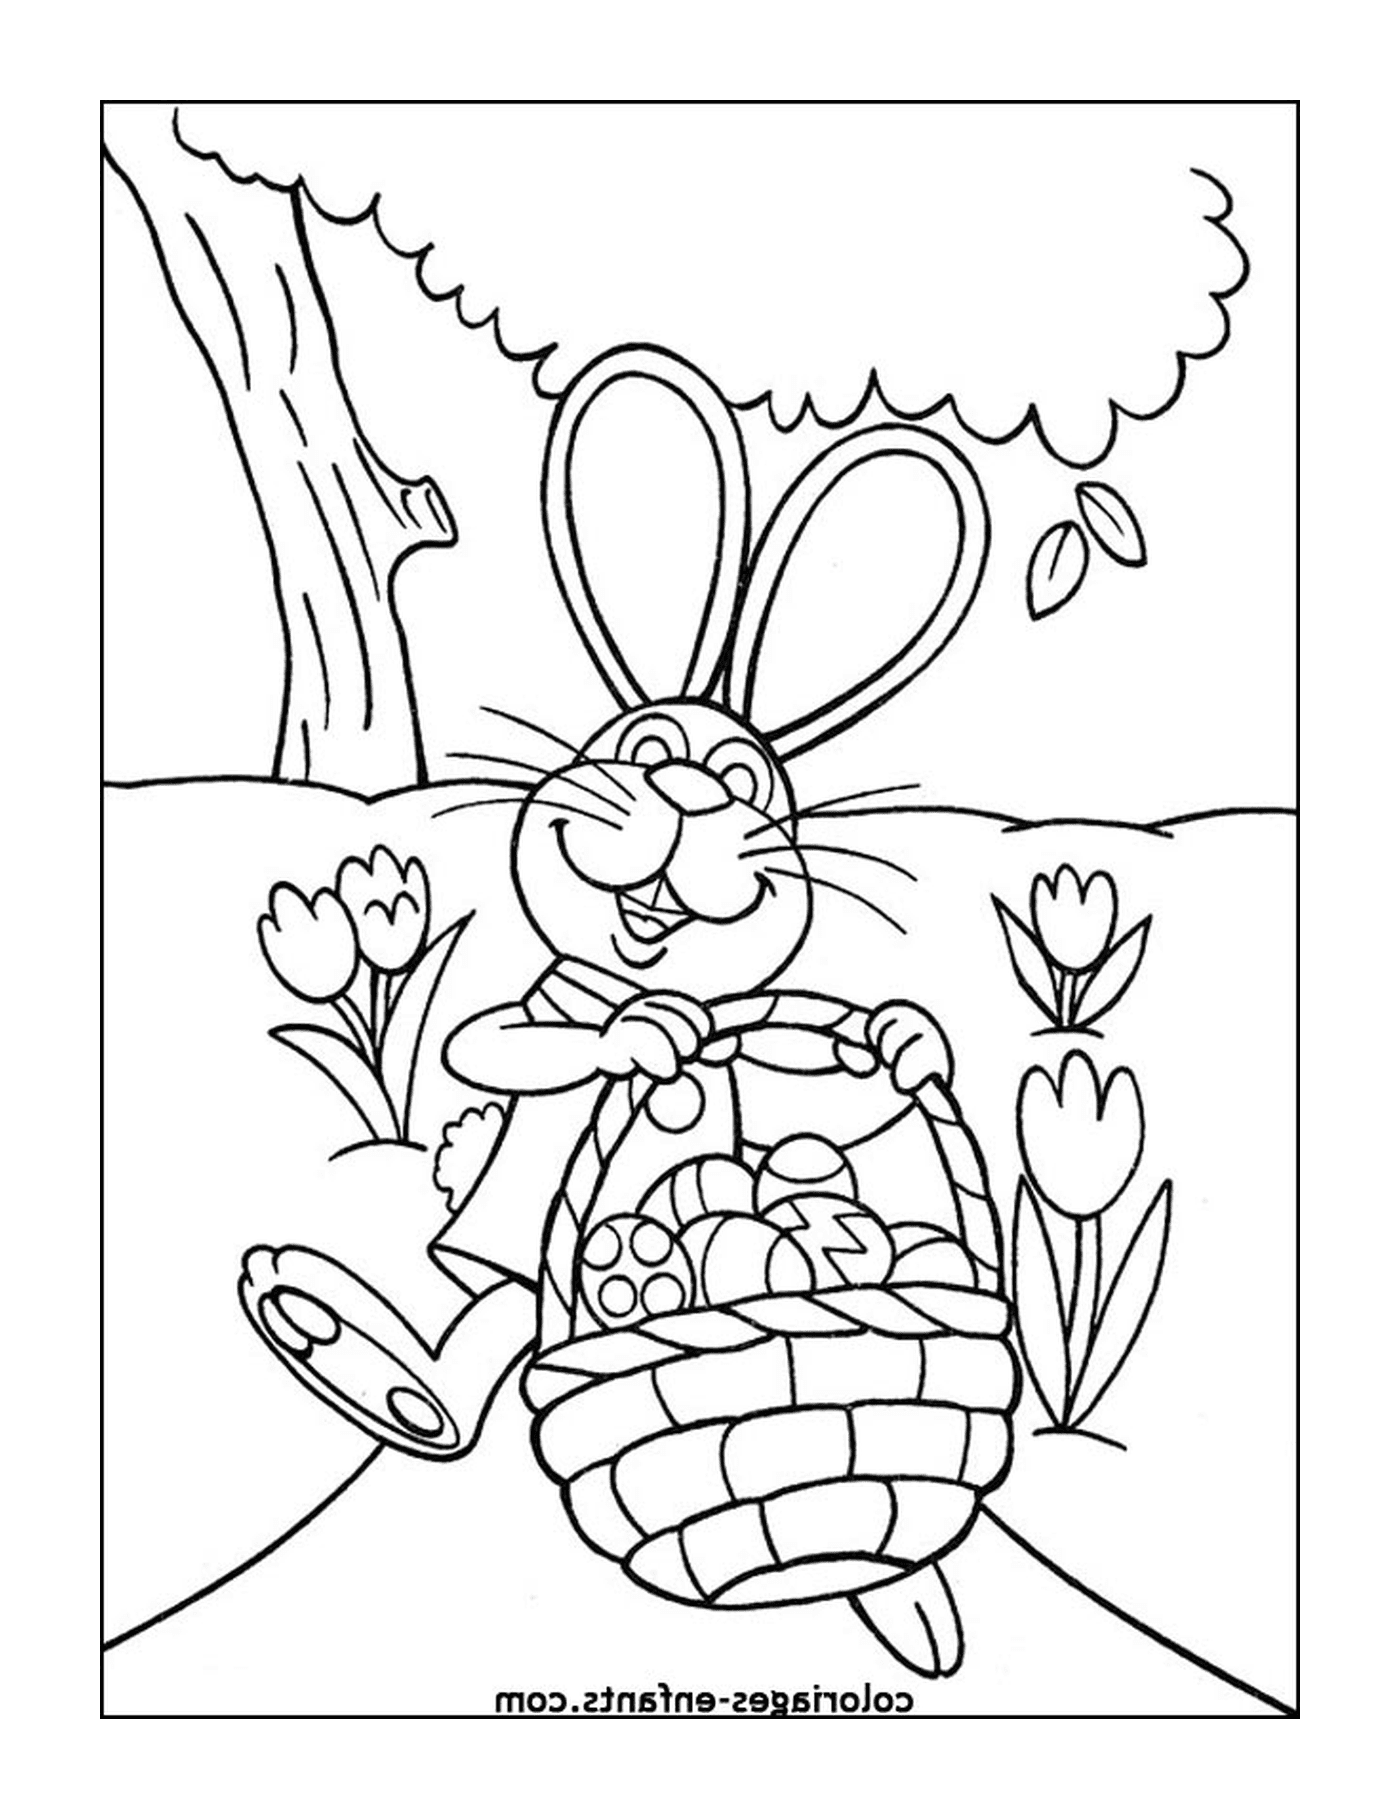  एक ईस्टर खरगोश जो अंडे से भरी टोकरी में है 